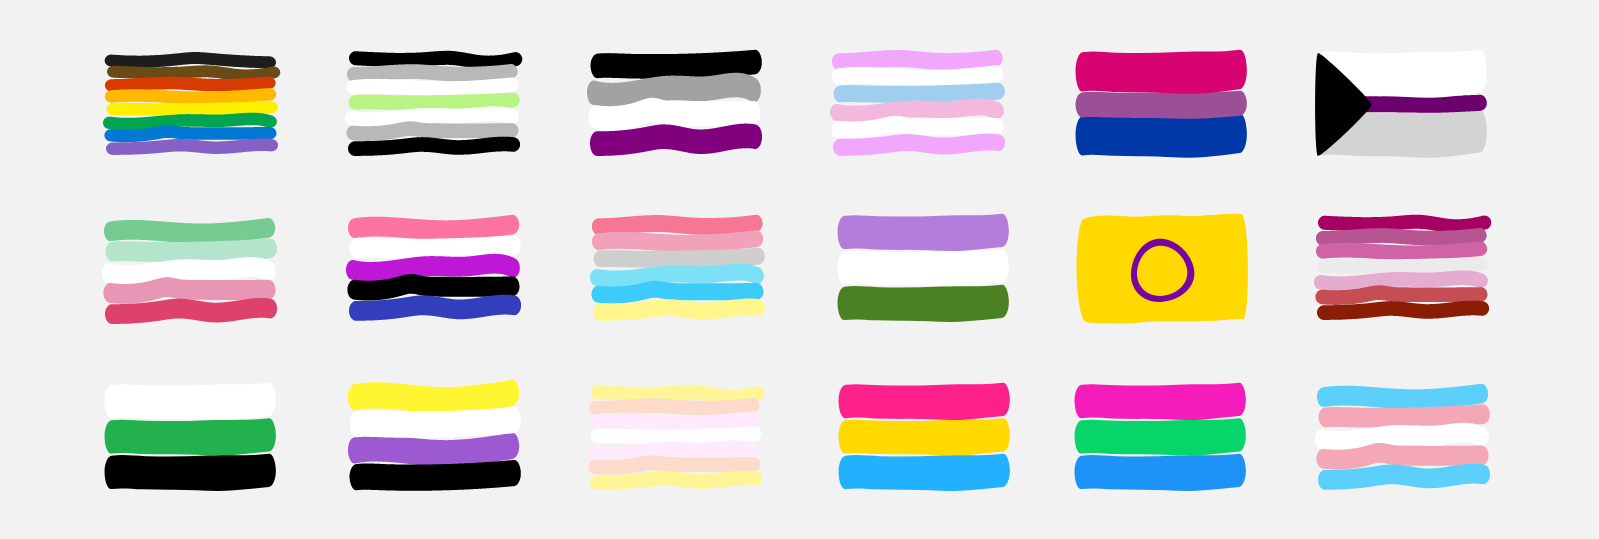 Verschiedene gezeichnete Flaggen in bunten Farben (LGBTQI+ Spektrum) auf grauen Hintergrund